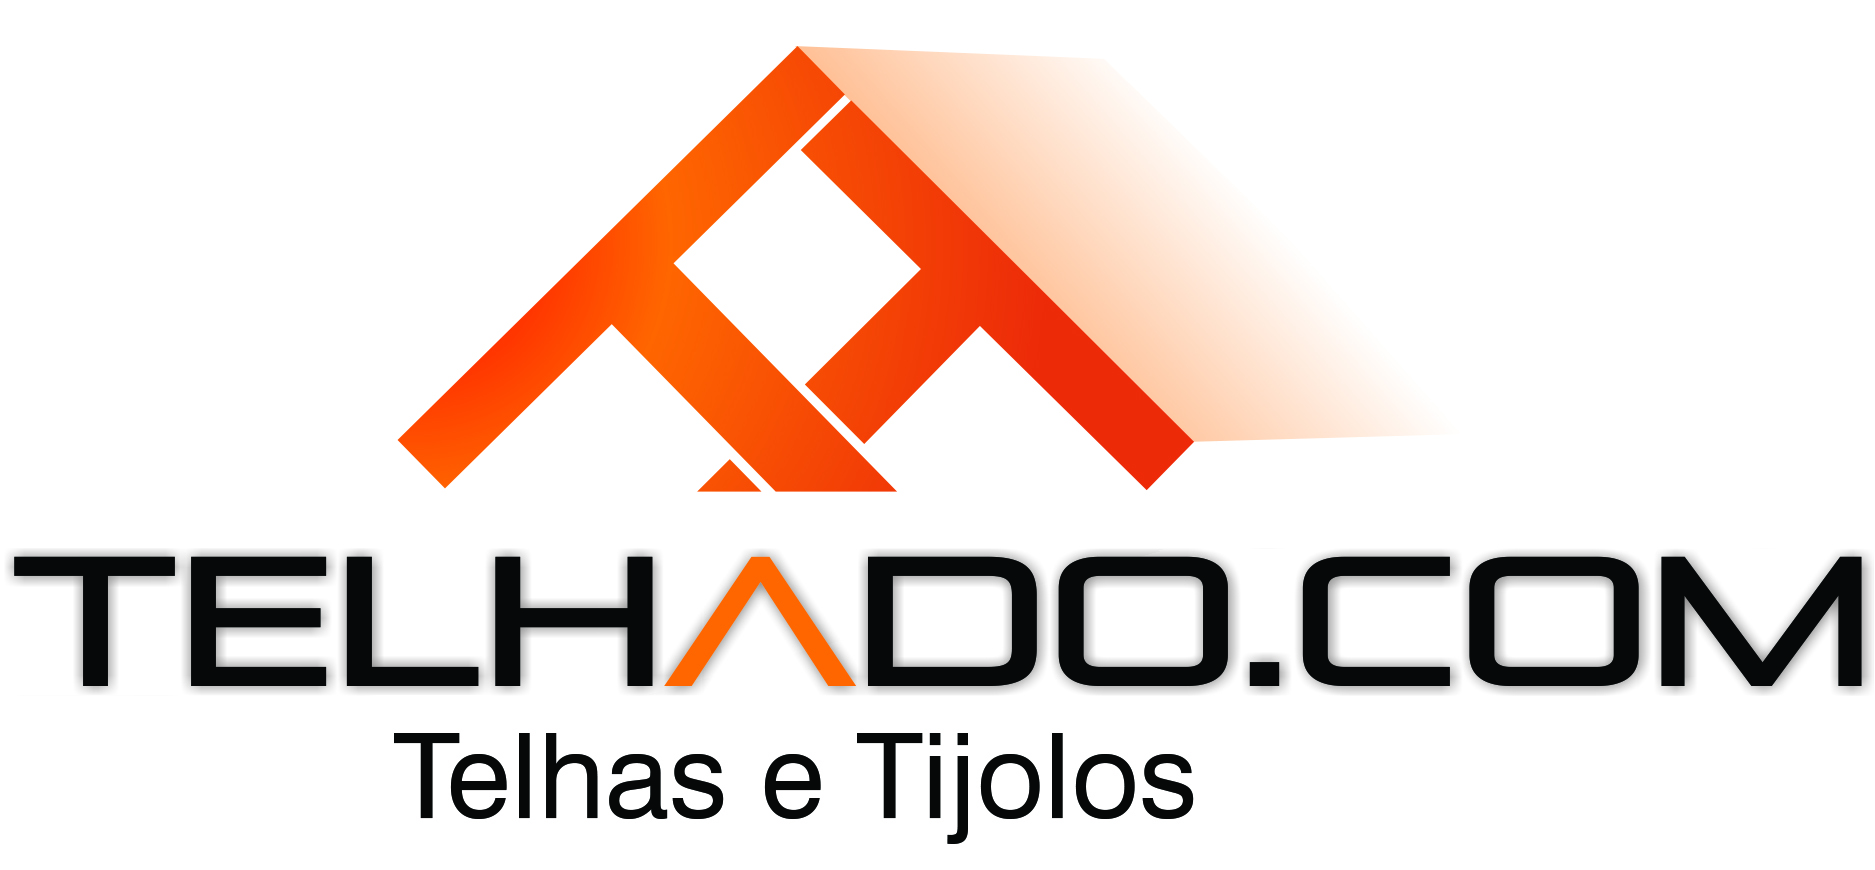 TELHADO.COM logo